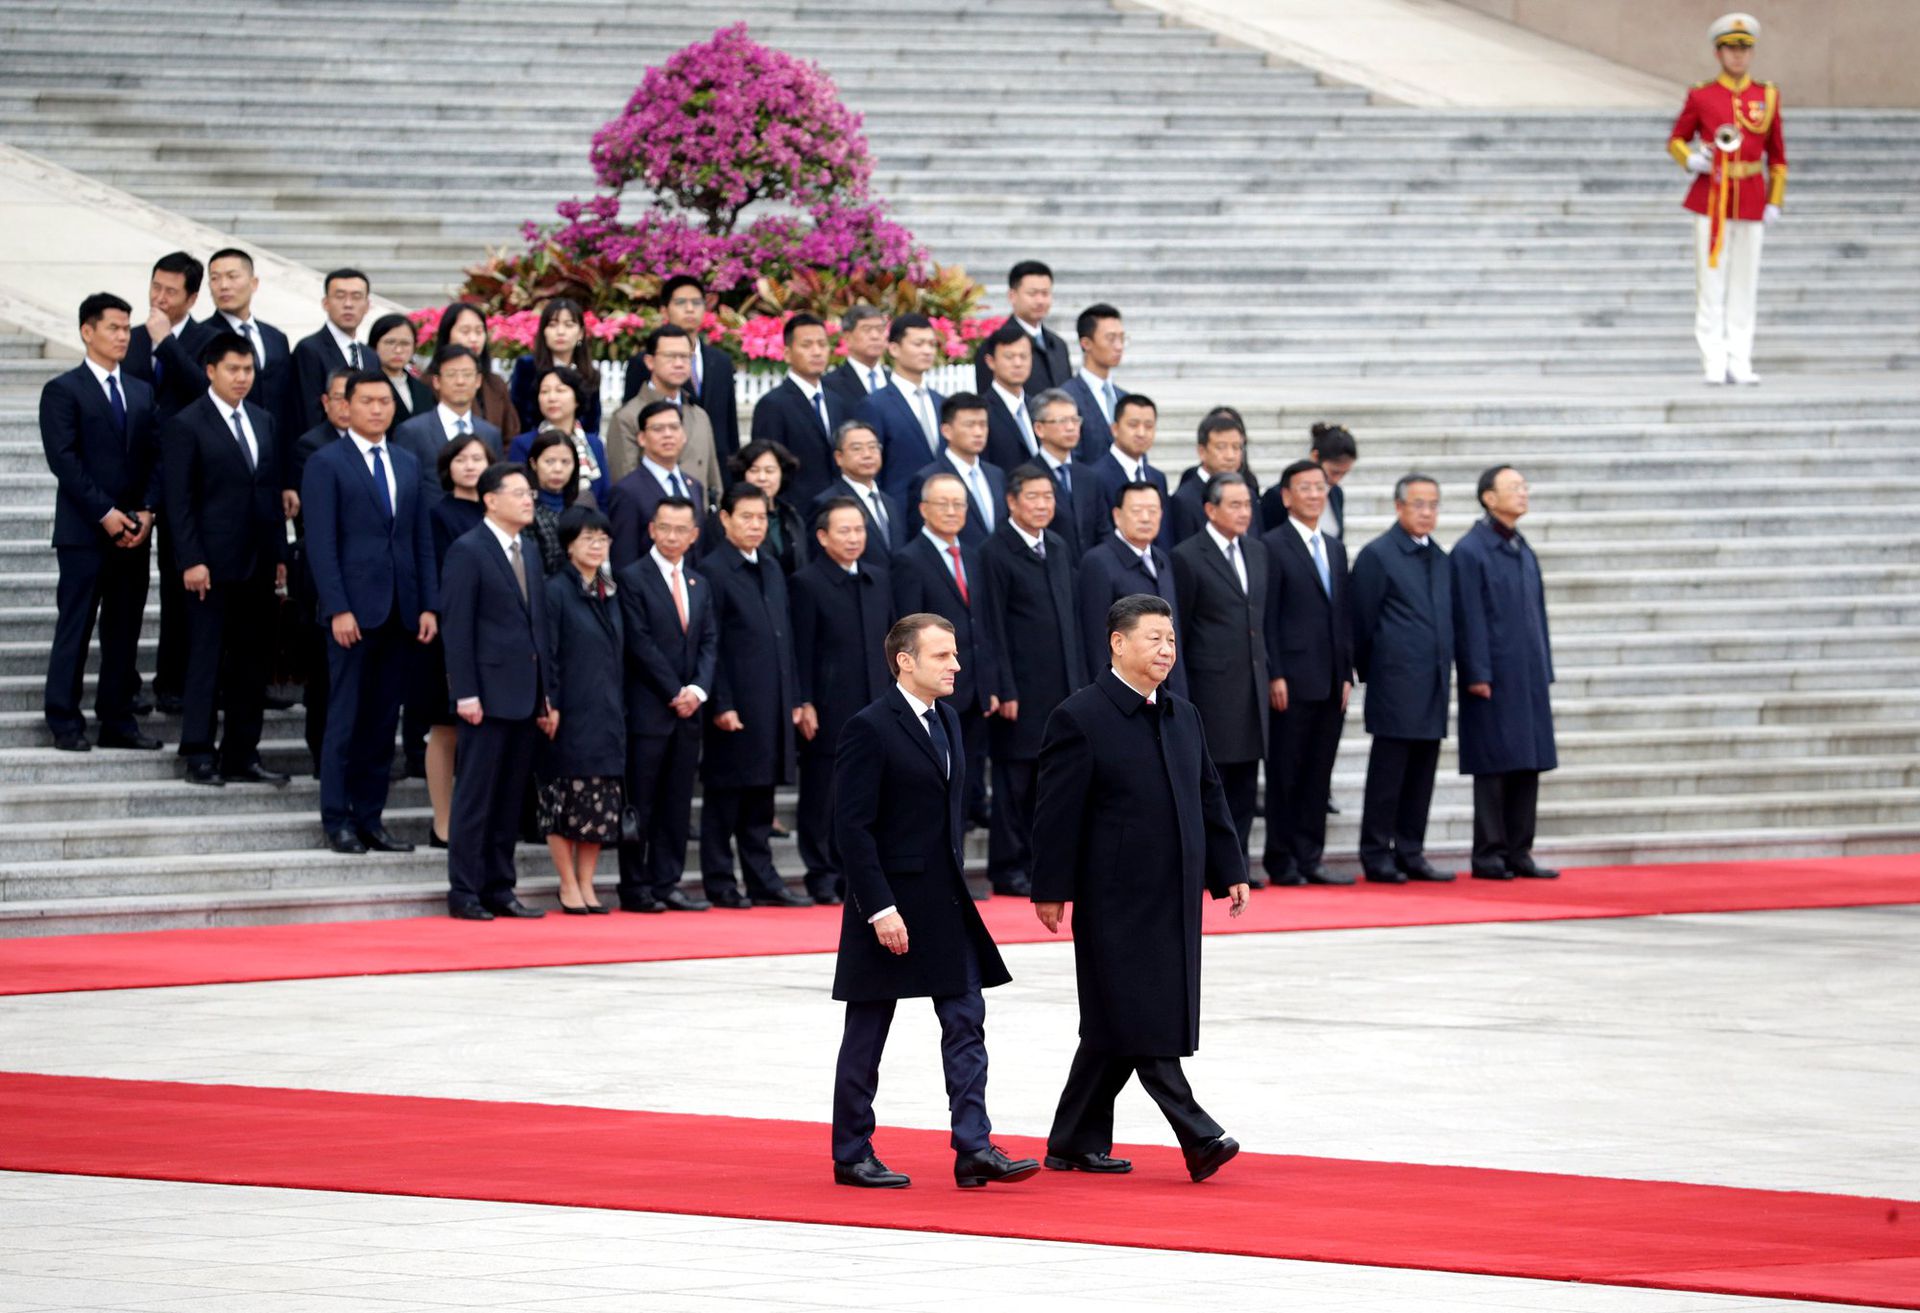 中国国家主席习近平和法国总统马克龙在北京人民大会堂出席欢迎仪式，两人走在红毯上。（Reuters）